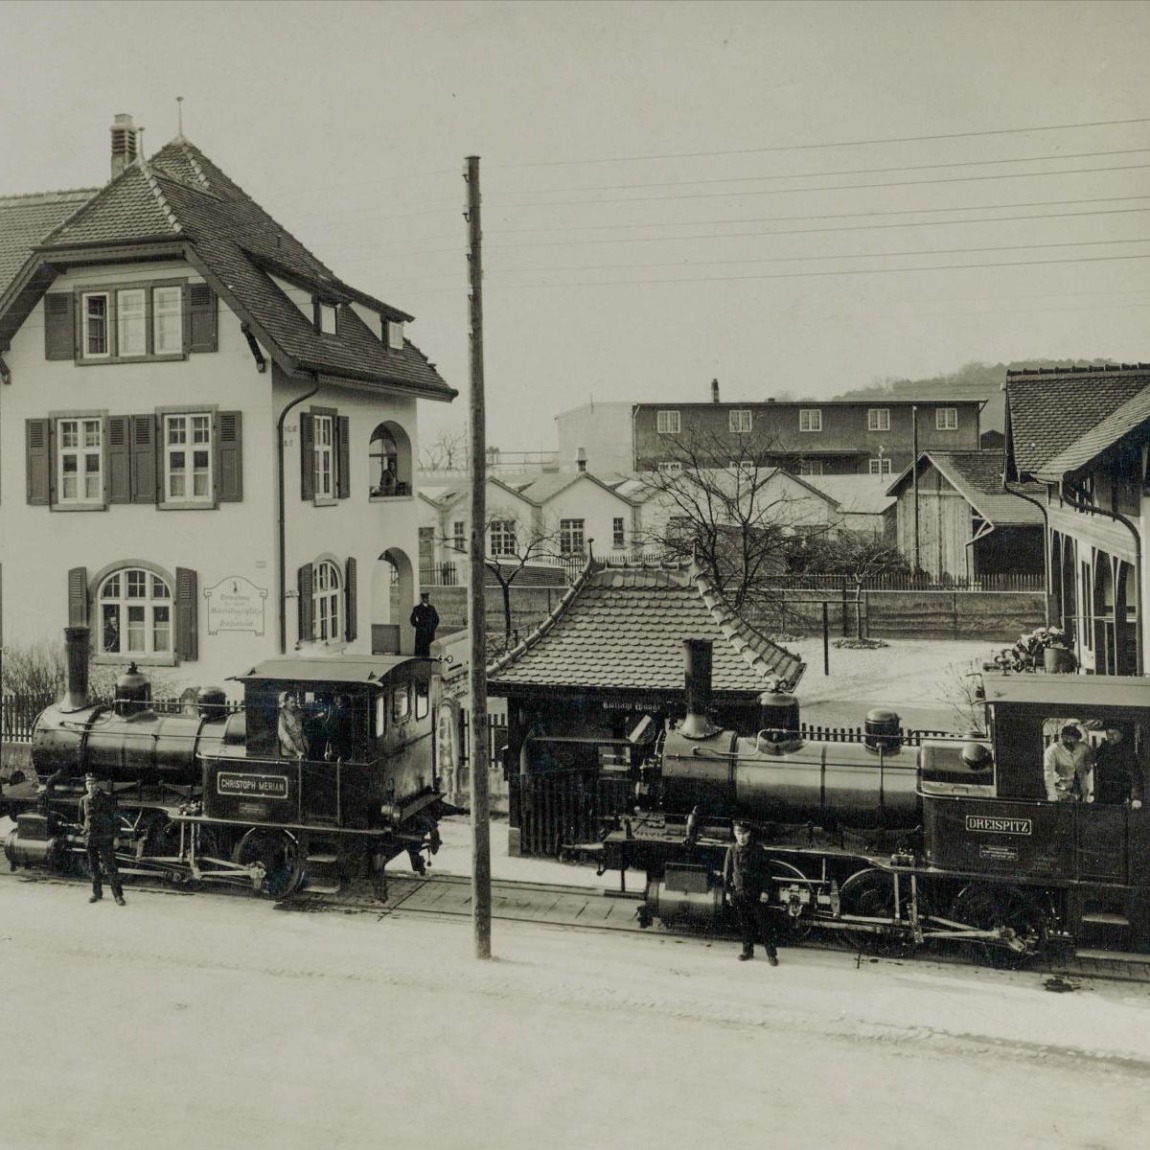 Anfang des 20. Jahrhunderts wird der Dreispitz, seit 1840 im Besitz von Christoph Merian und später der CMS, zum Standort von Materiallager, Logistik, Zollfreilager, Gewerbe und Industrie – mit Anschluss an das Schienennetz der SBB und einer eigenen Bahn. 